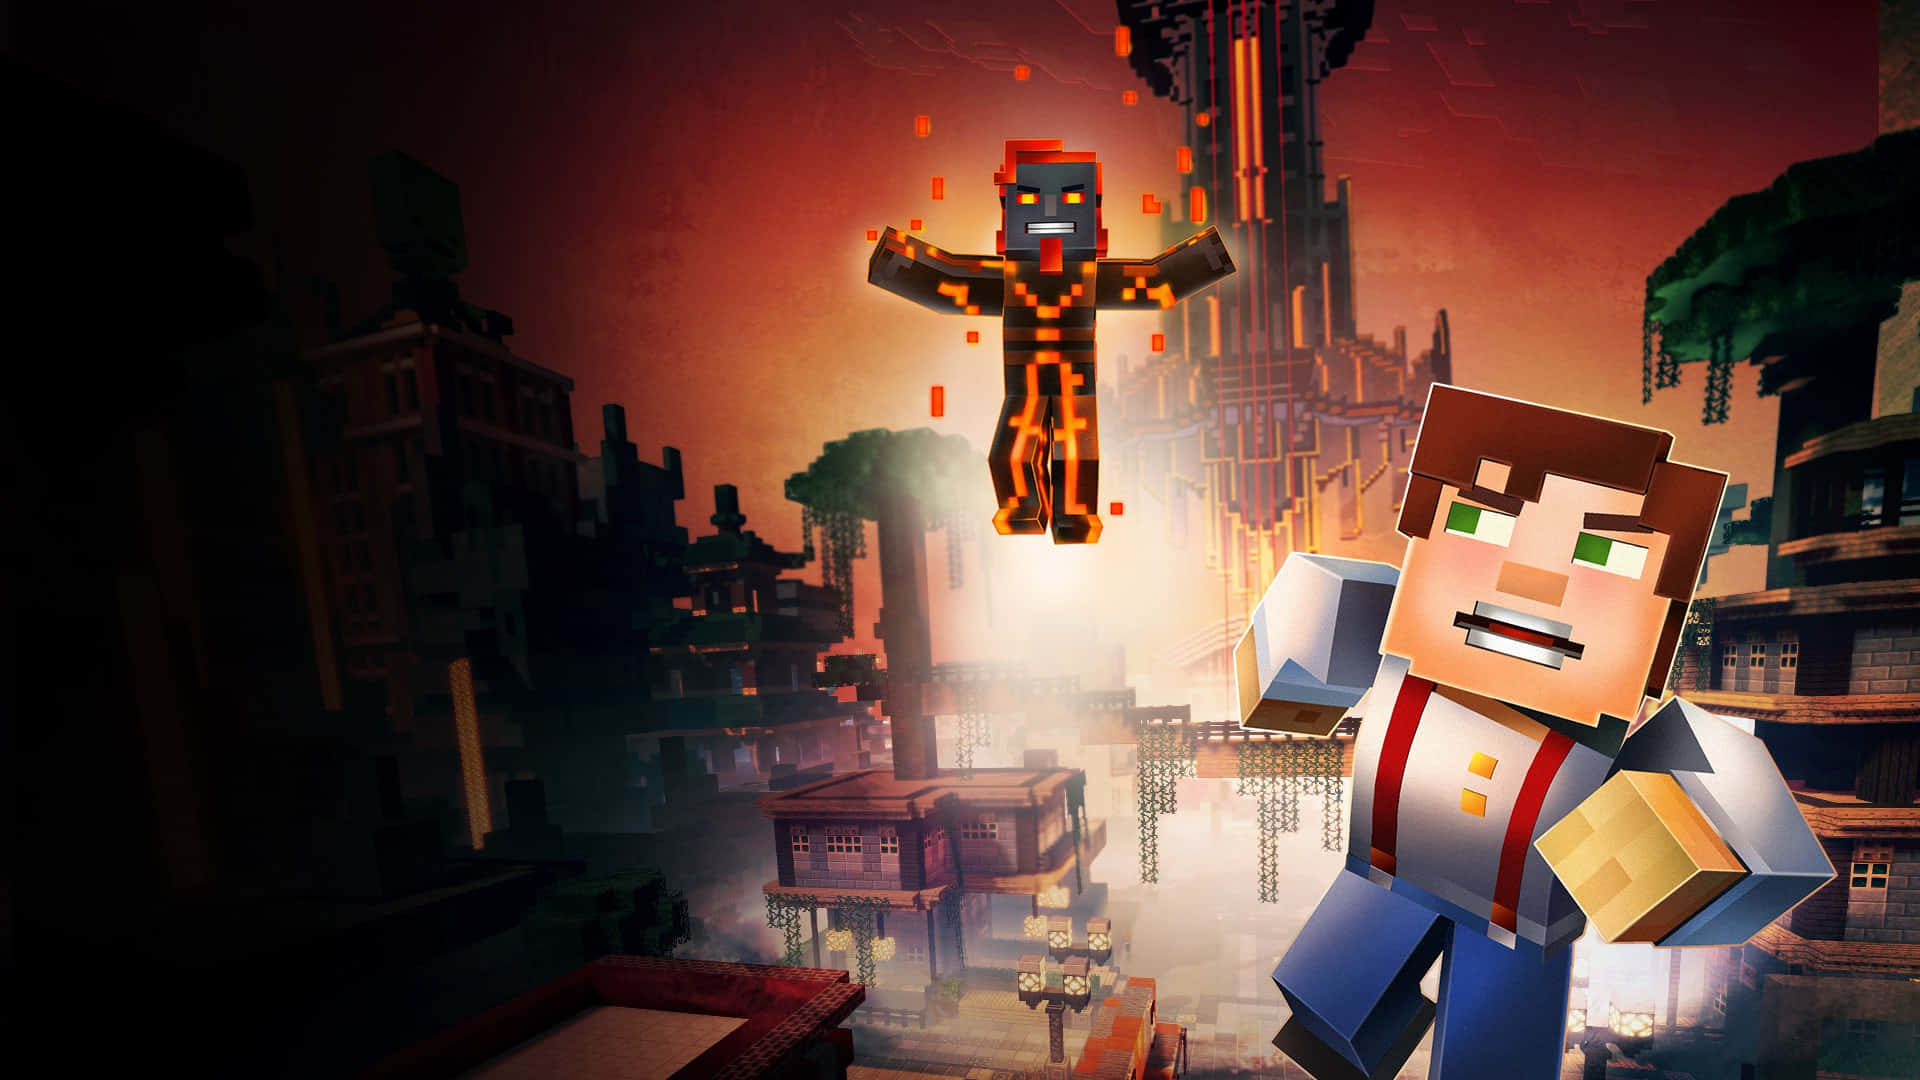 Baixar Minecraft Story Mode Completo em Português Ep. 1 a 8 - Vídeo  Dailymotion